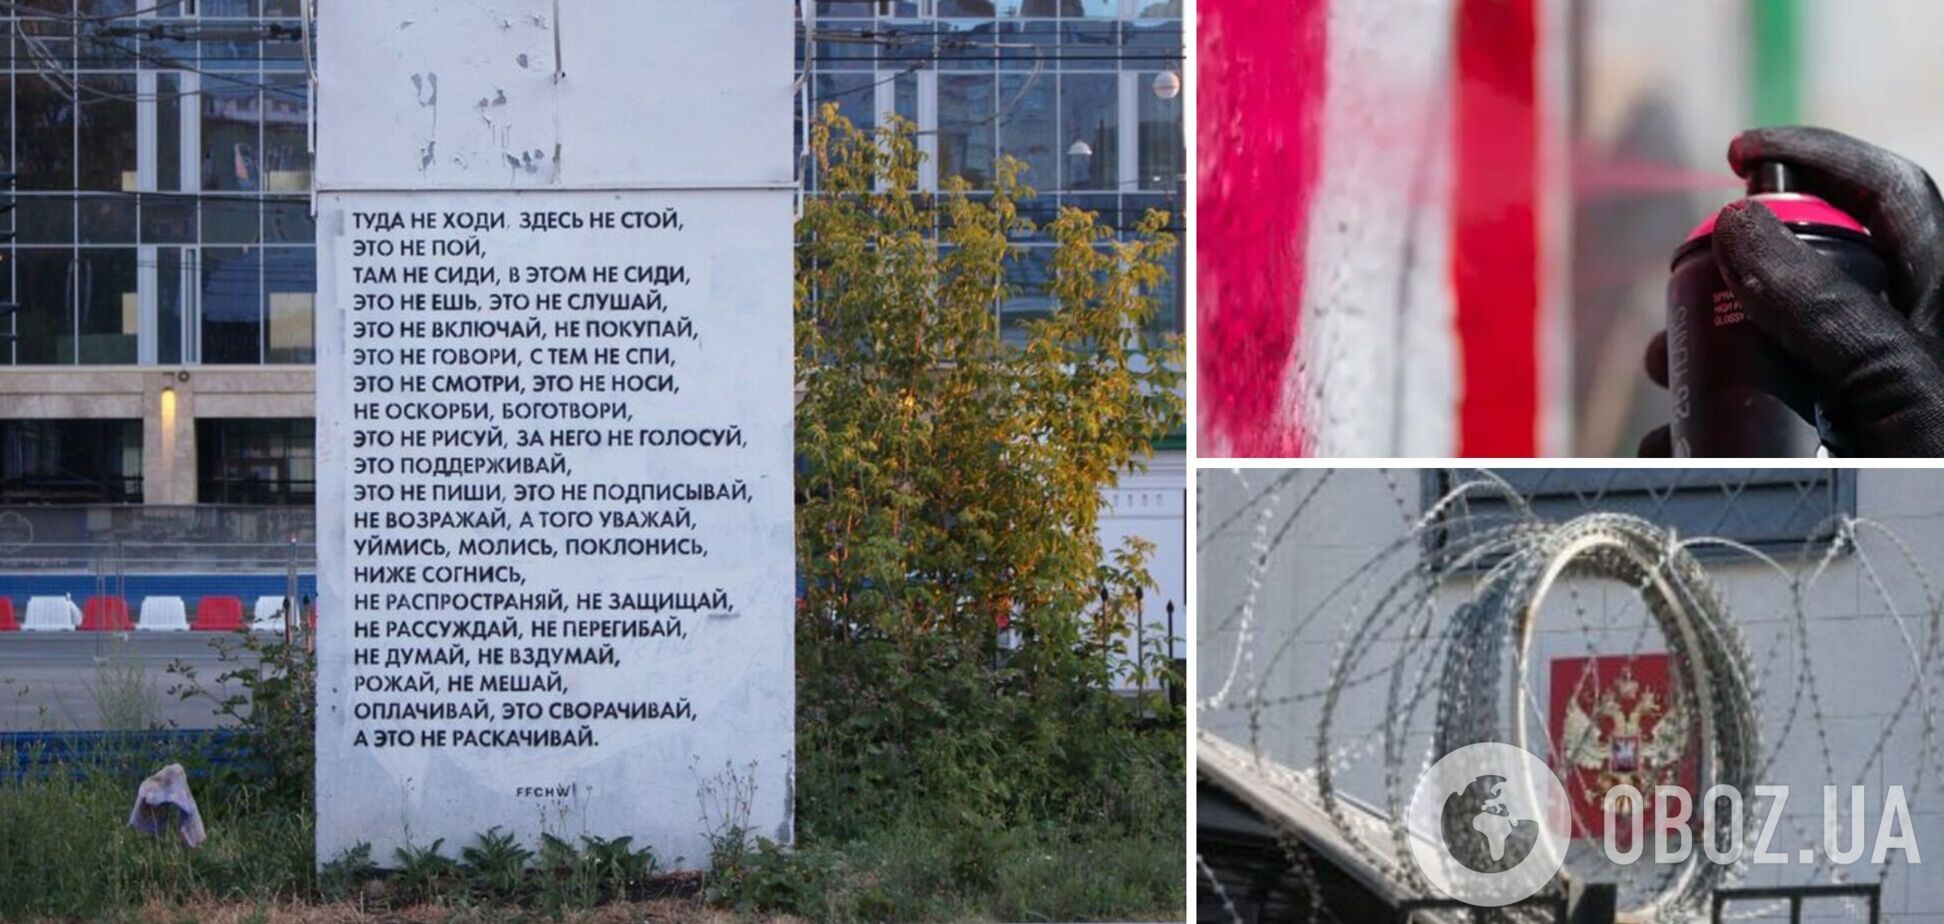 'Не возражай, поклонись, ниже согнись': пермський художник показав реалії життя в Росії, але графіті одразу зафарбували